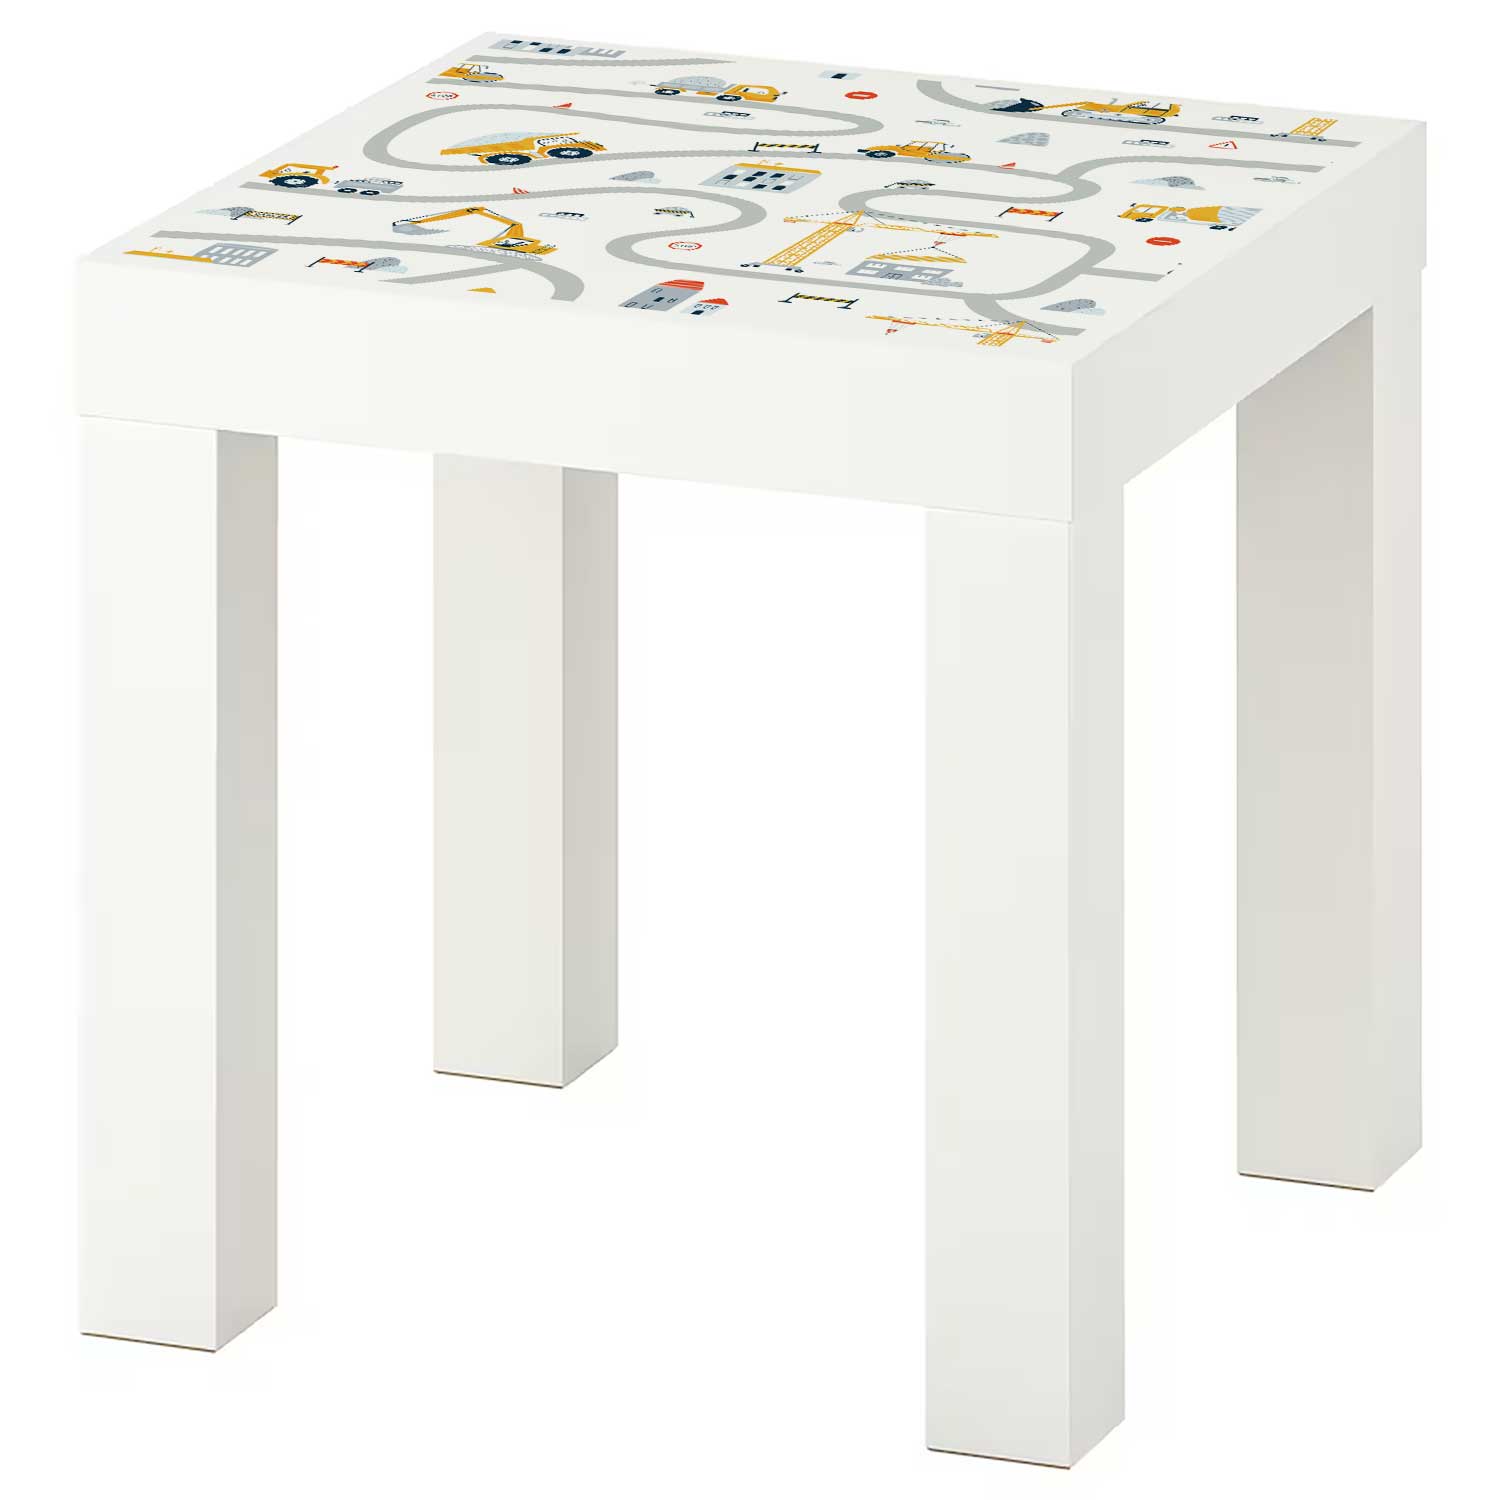 Möbelfolie Kinder für IKEA Lack Tisch 35x35 cm 'Baustelle'